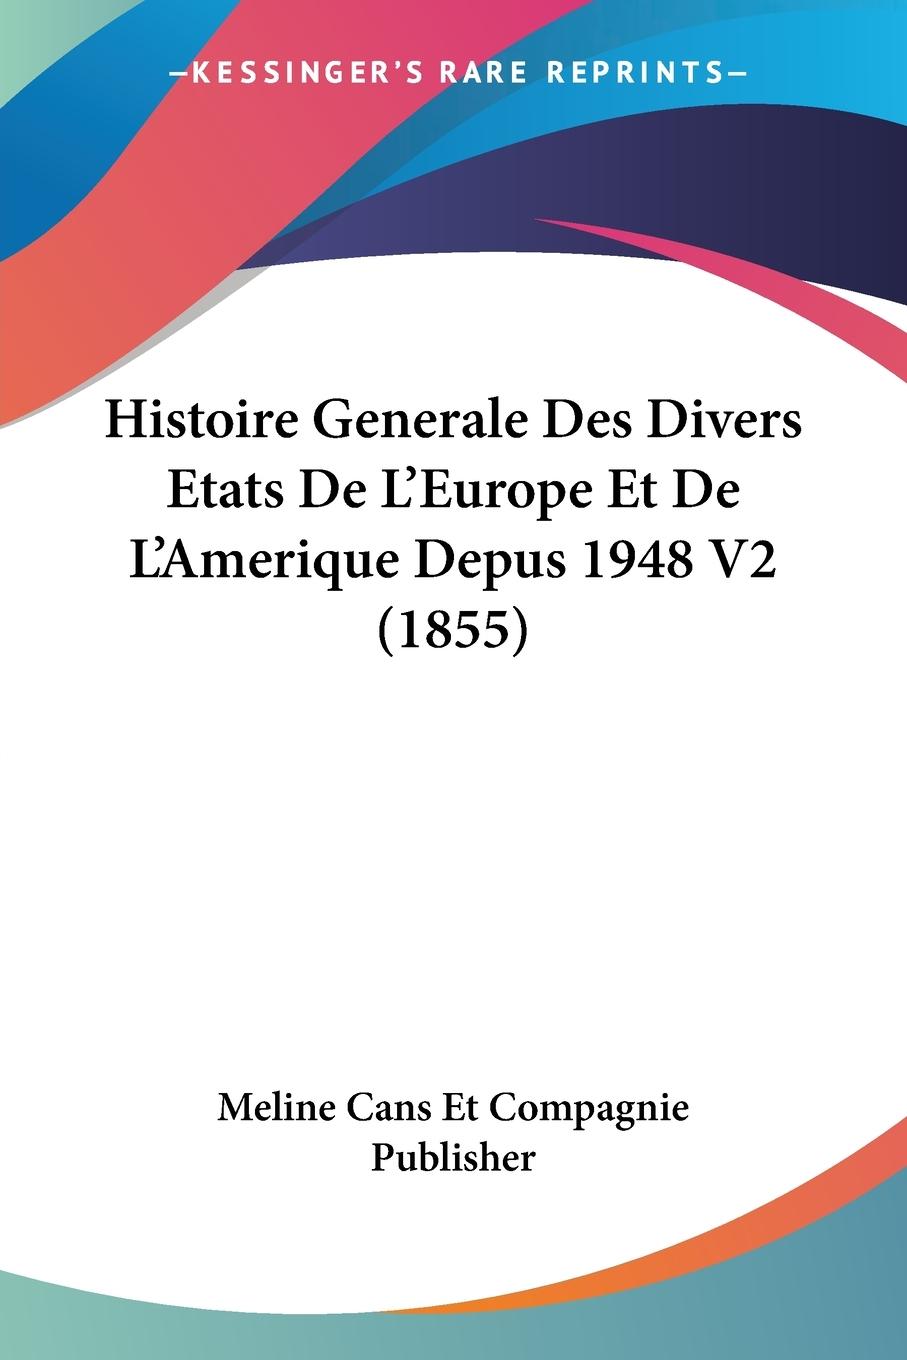 Histoire Generale Des Divers Etats De L Europe Et De L Amerique Depus 1948 V2 (1855) - Meline Cans Et Compagnie Publisher